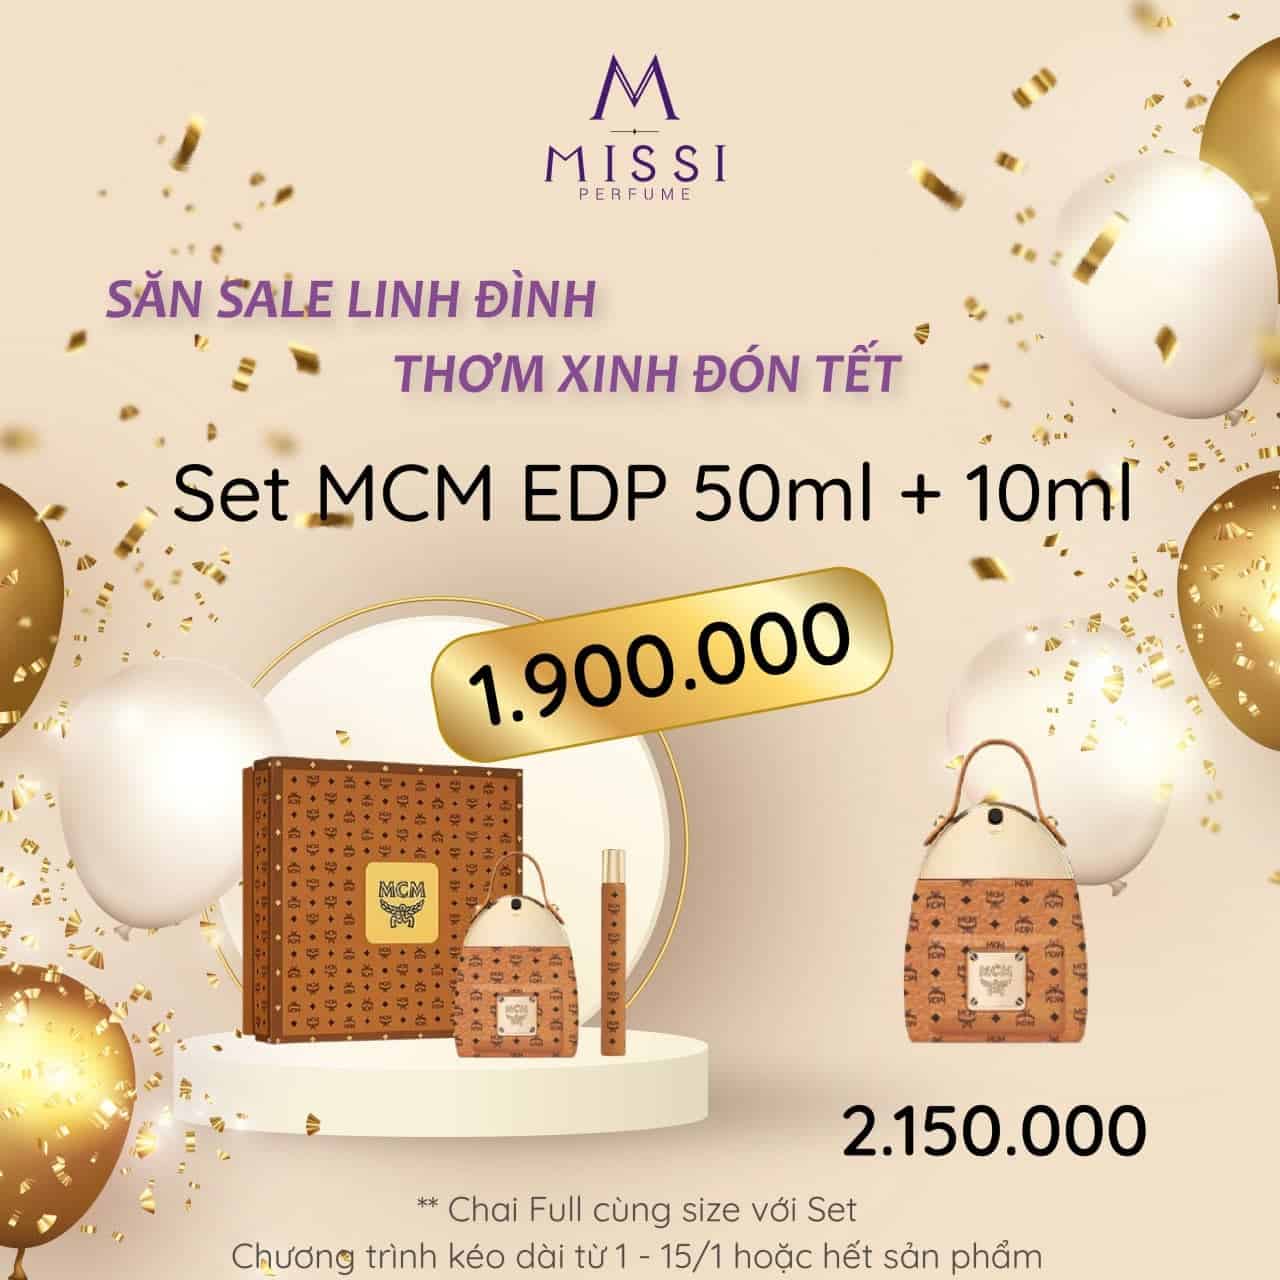 Set MCM EDP 50ml Missi Perfume